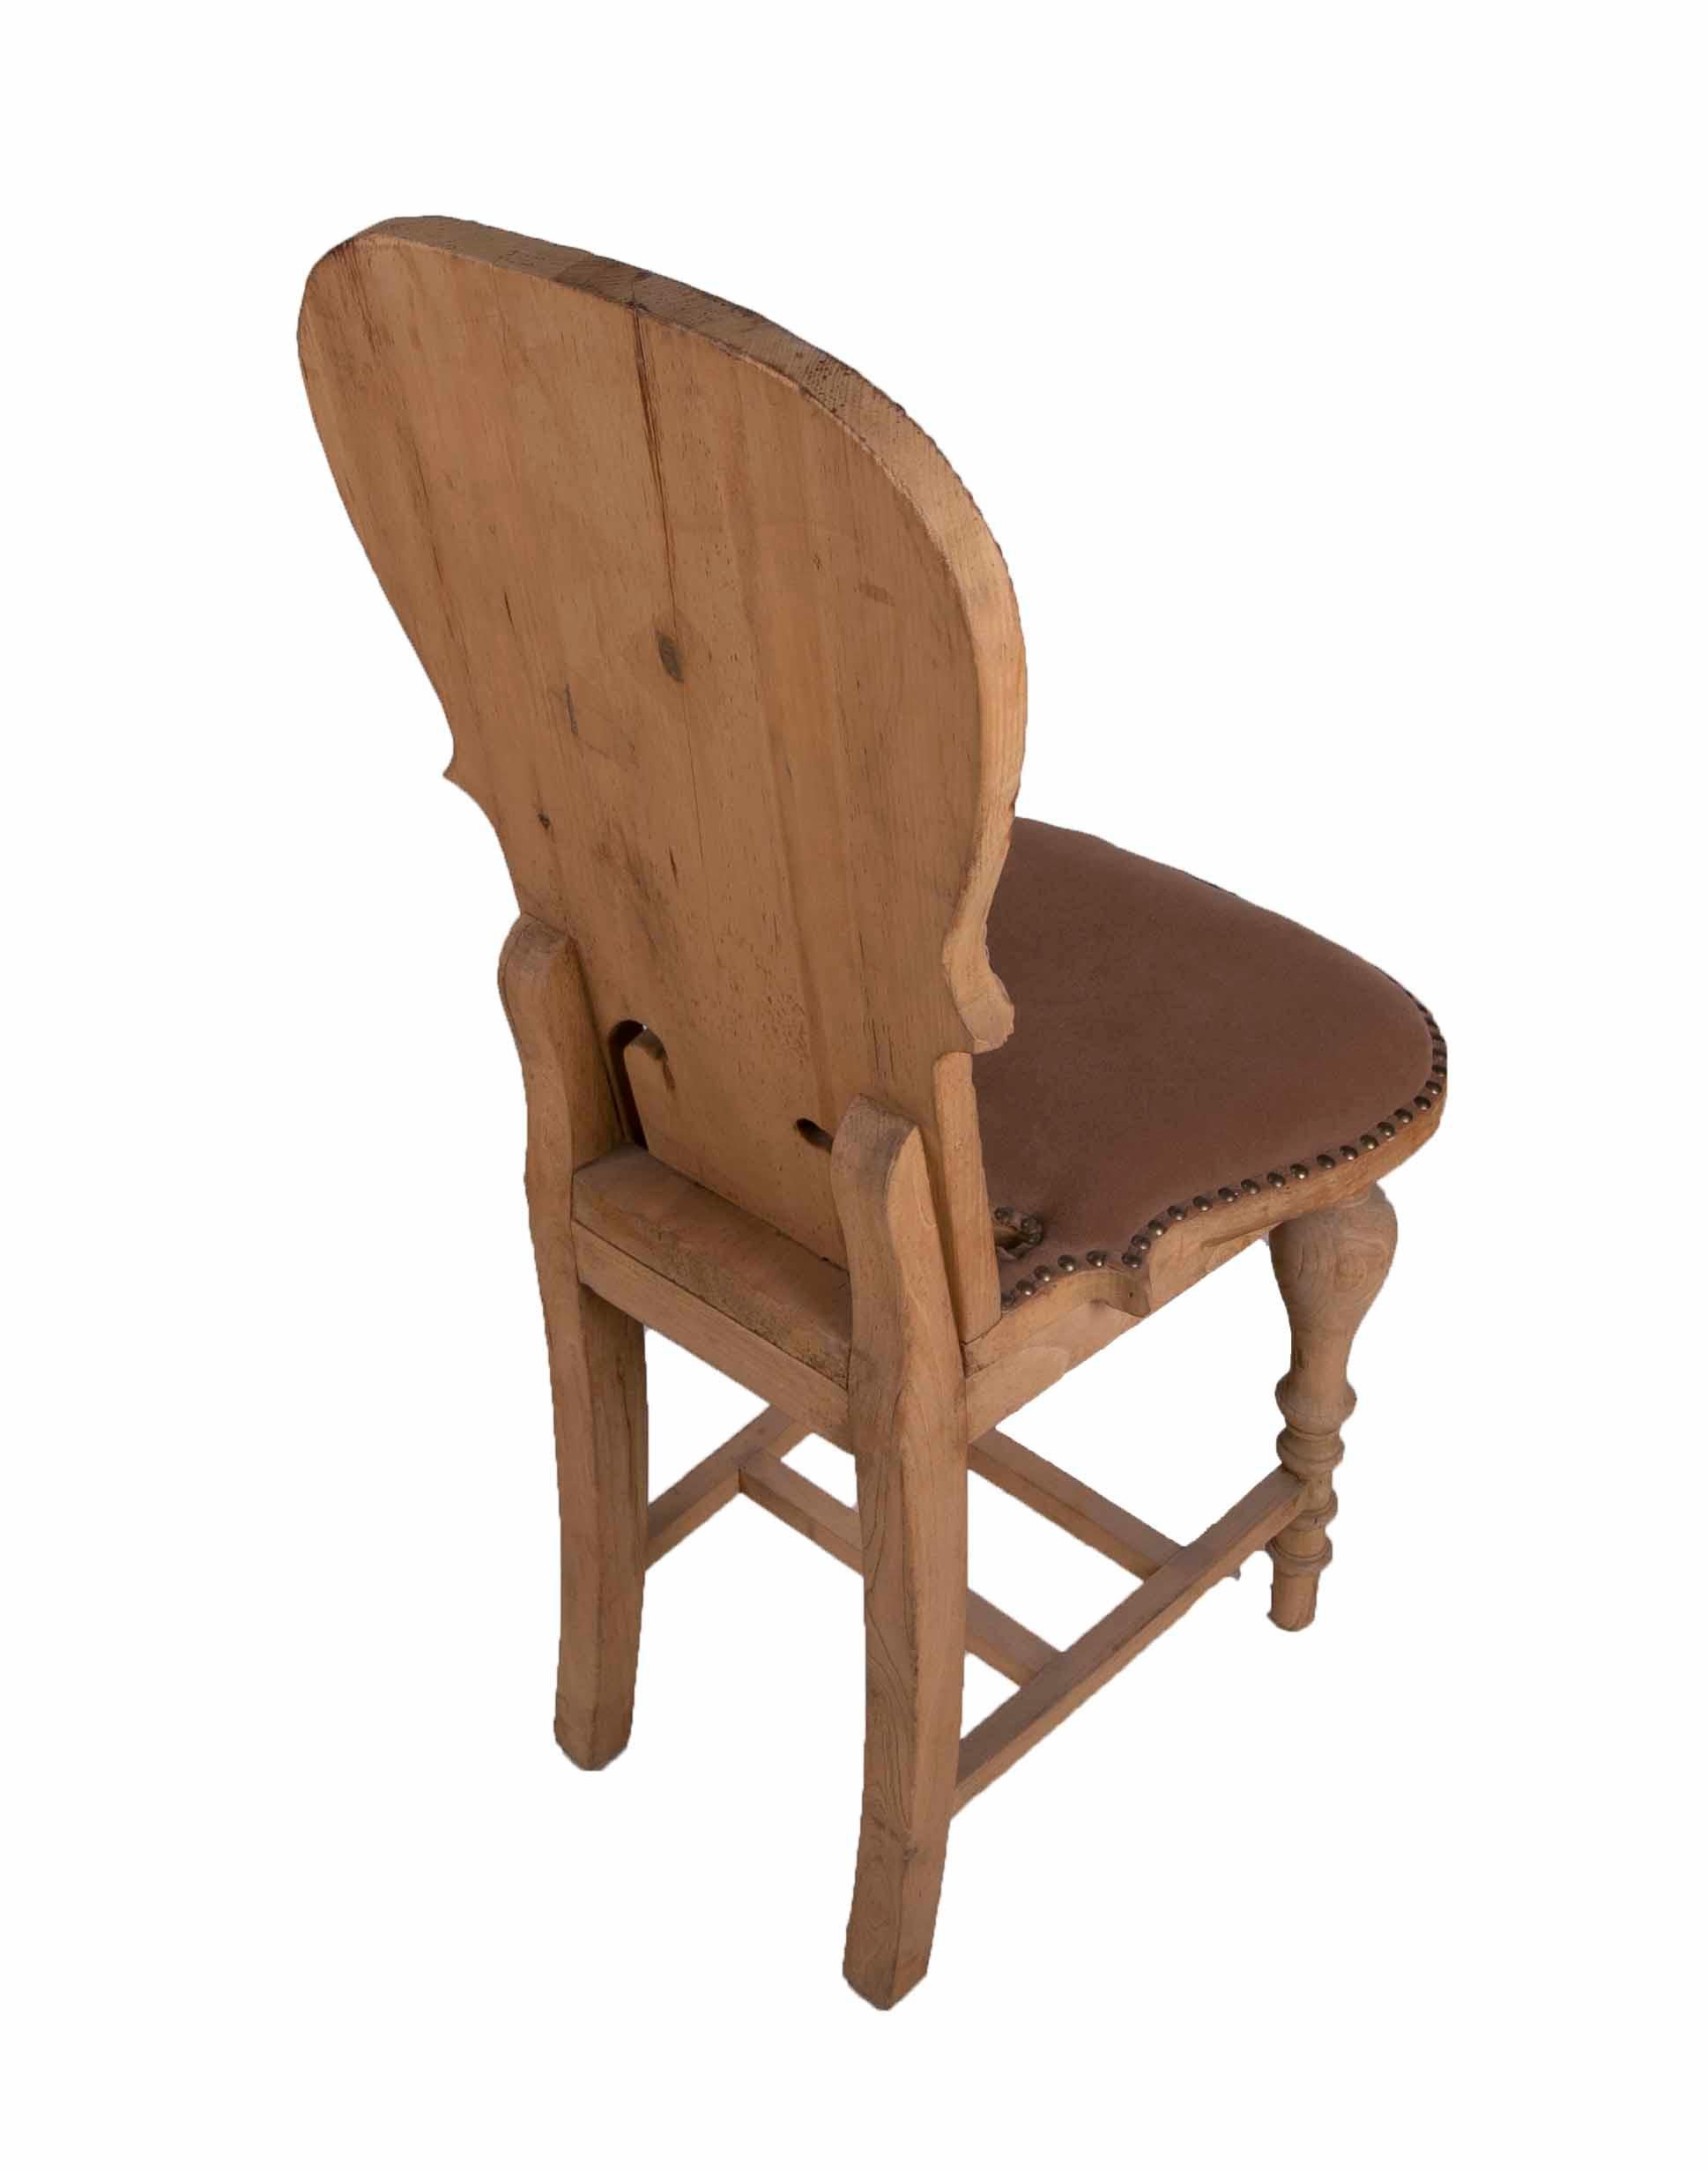 Set aus zwölf Stühlen in der Farbe des Holzes, gepolstert mit Ohrsteckern, 1950er Jahre (20. Jahrhundert)